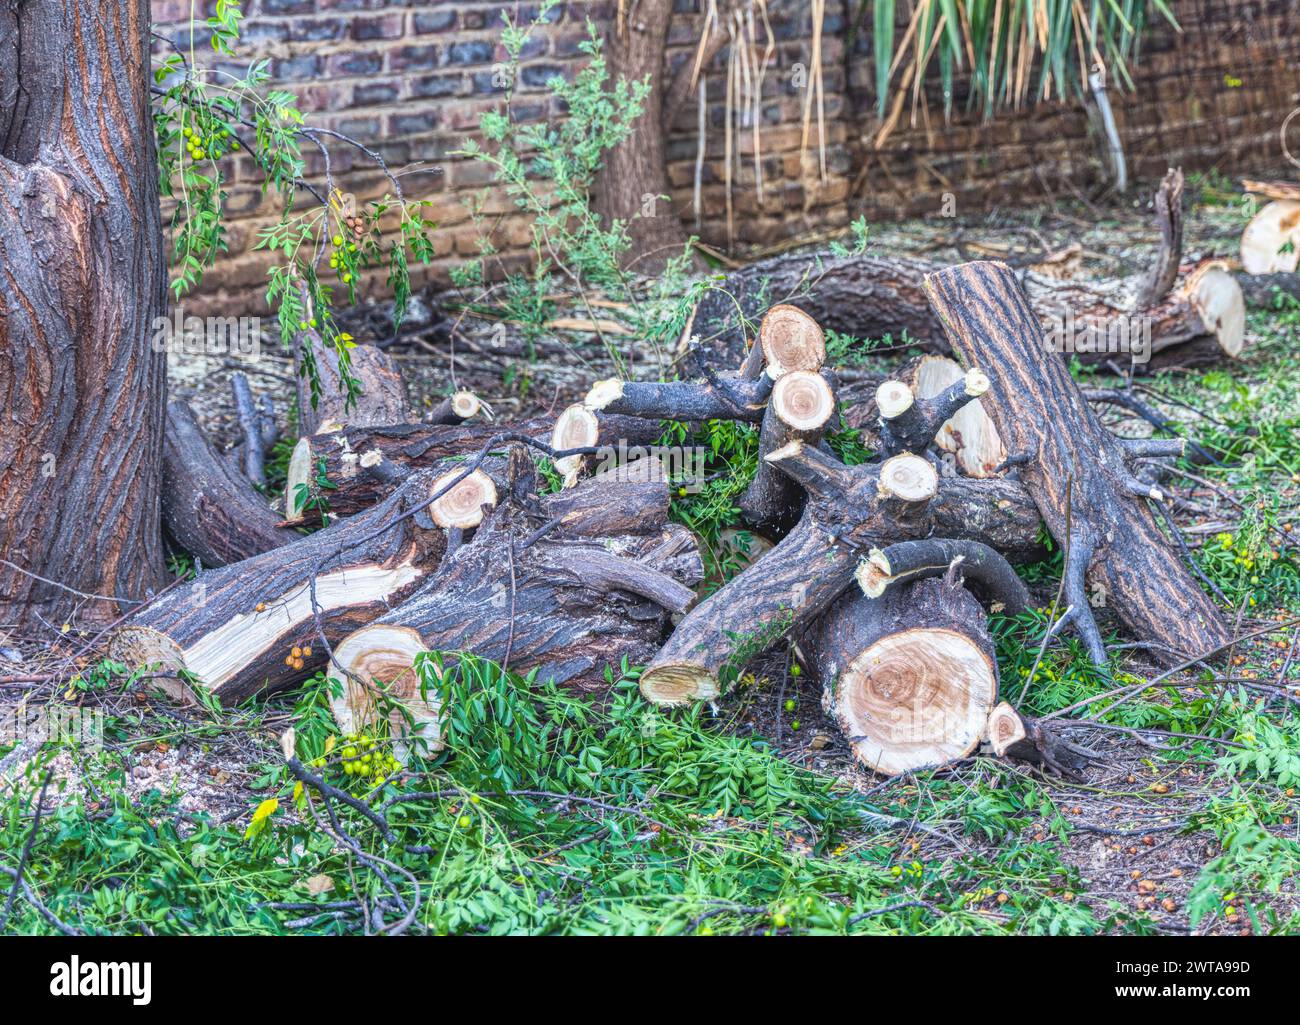 Bäume abschneiden, Äste schneiden und den Hof reinigen, Abholzung illegaler Holzschnitt Stockfoto